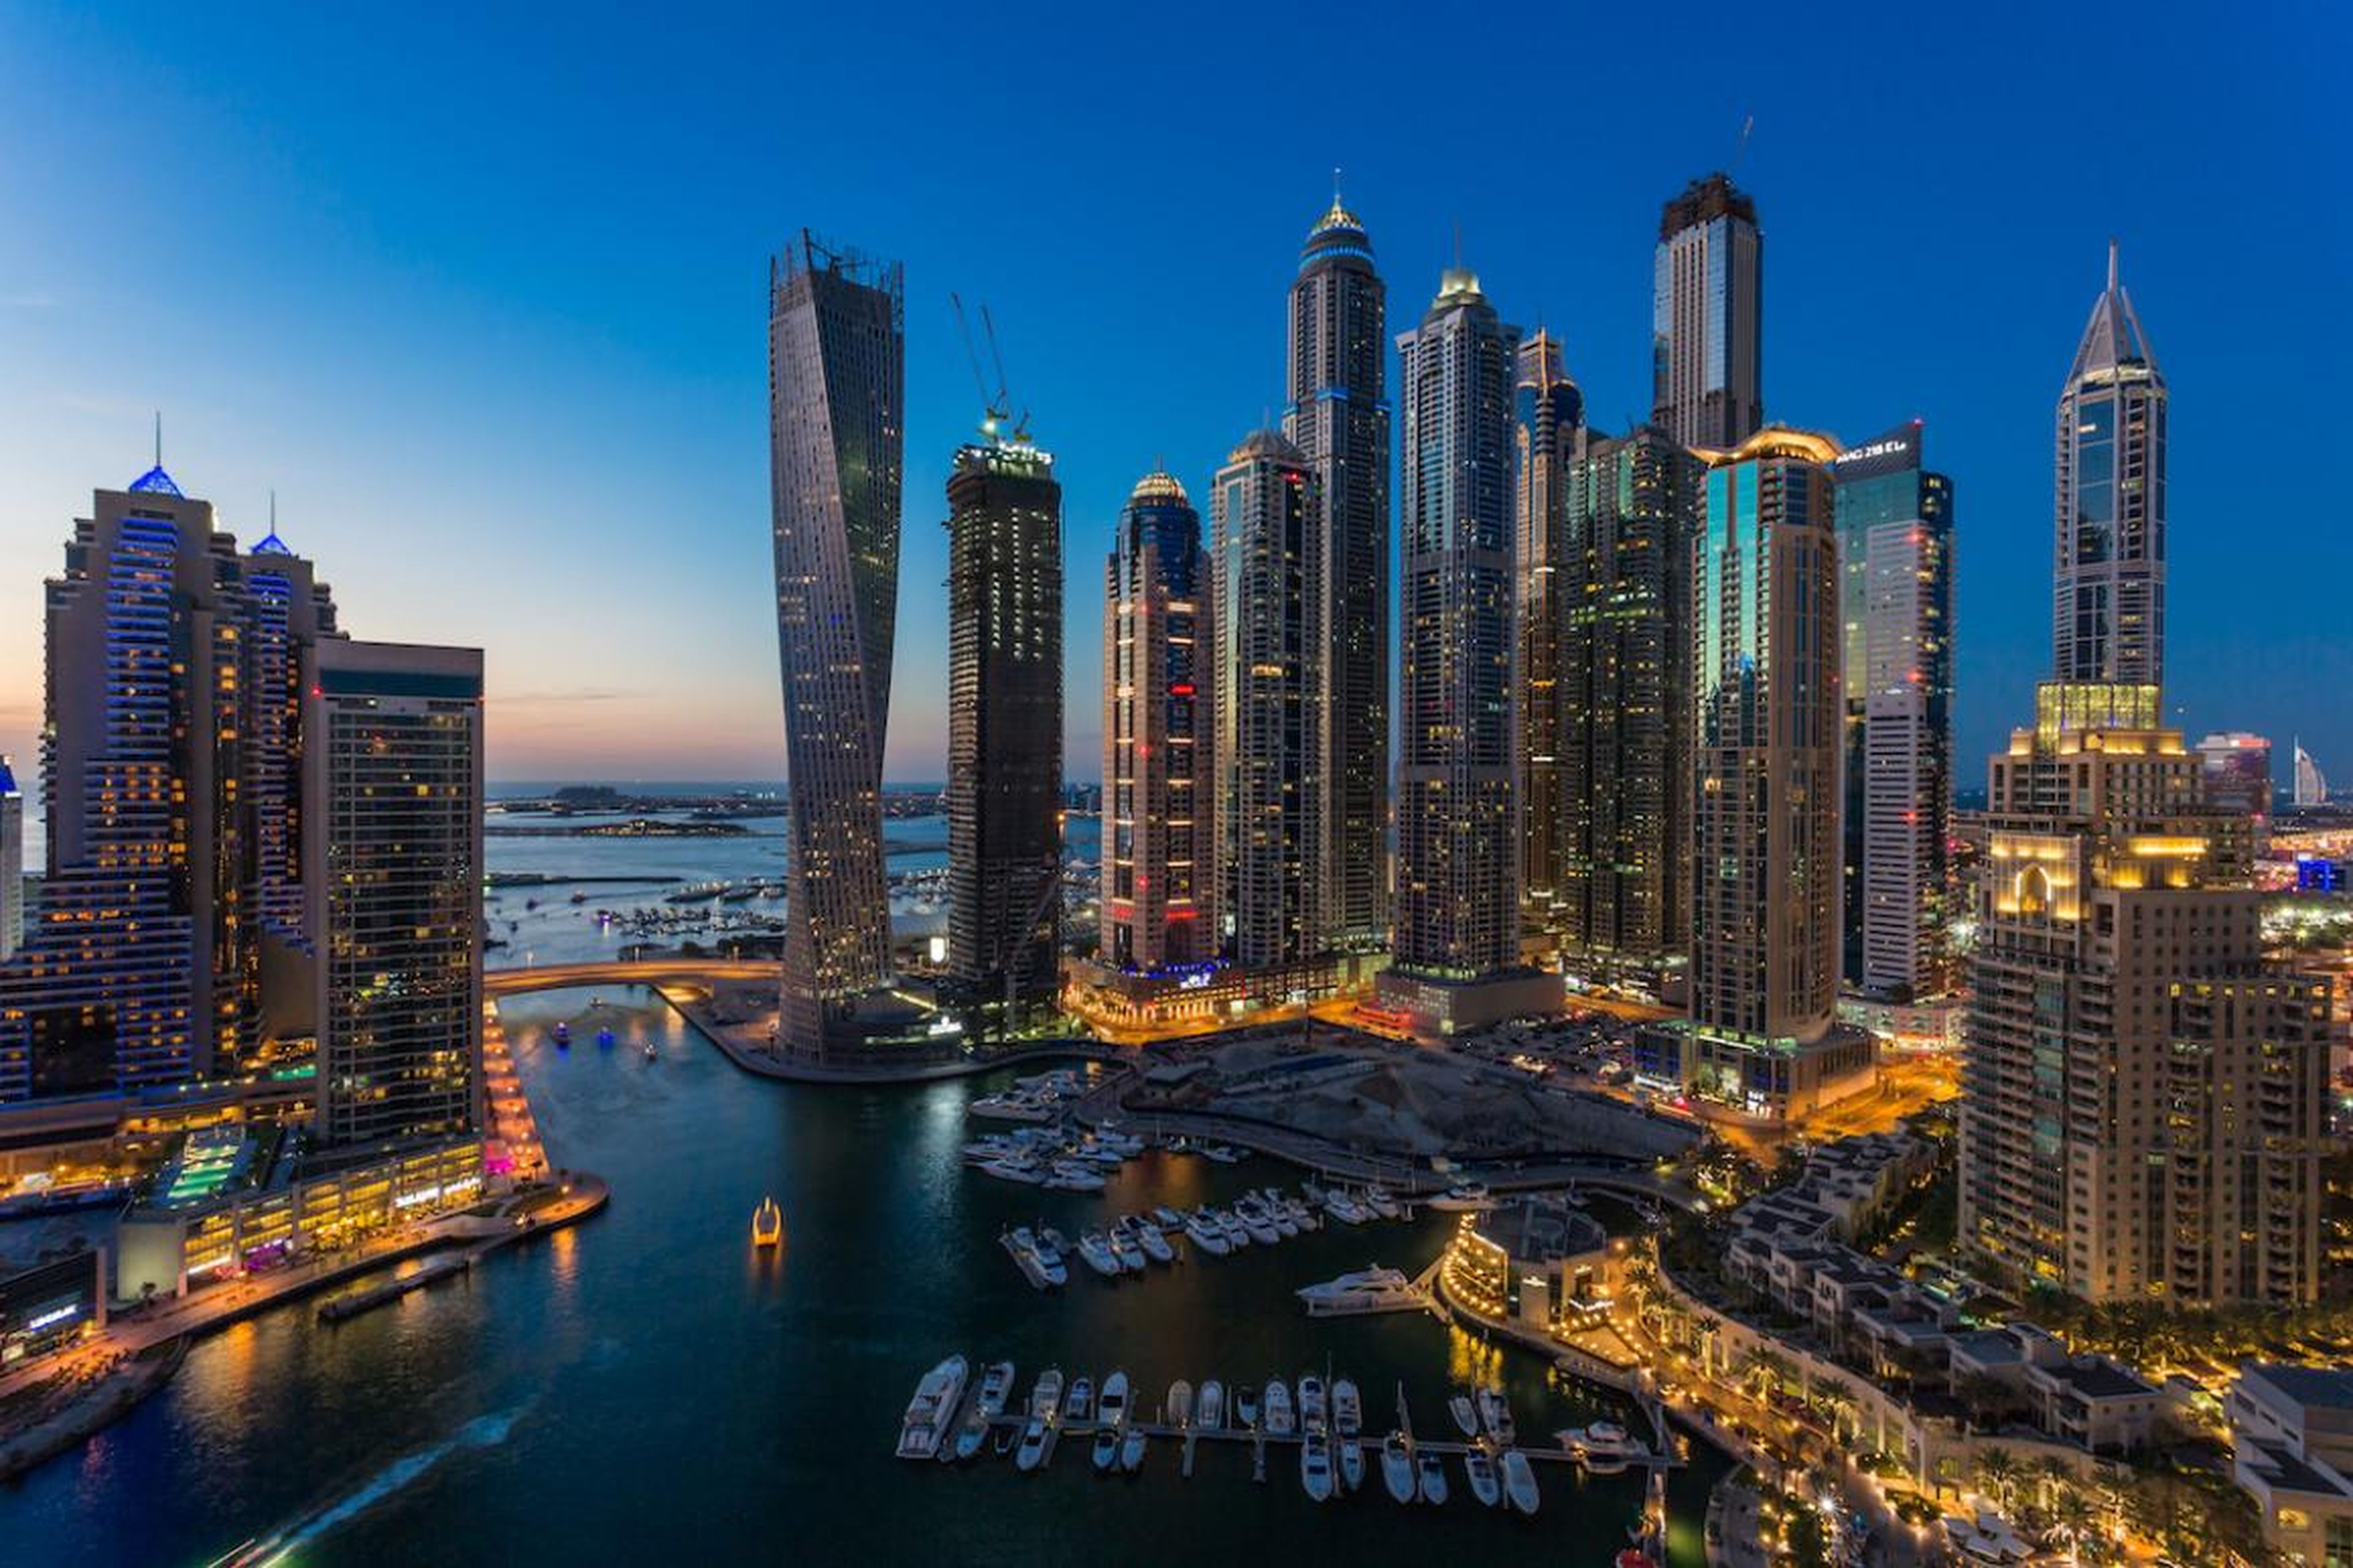 Una vista nocturna de la Princess Tower y el puerto deportivo de Dubai.